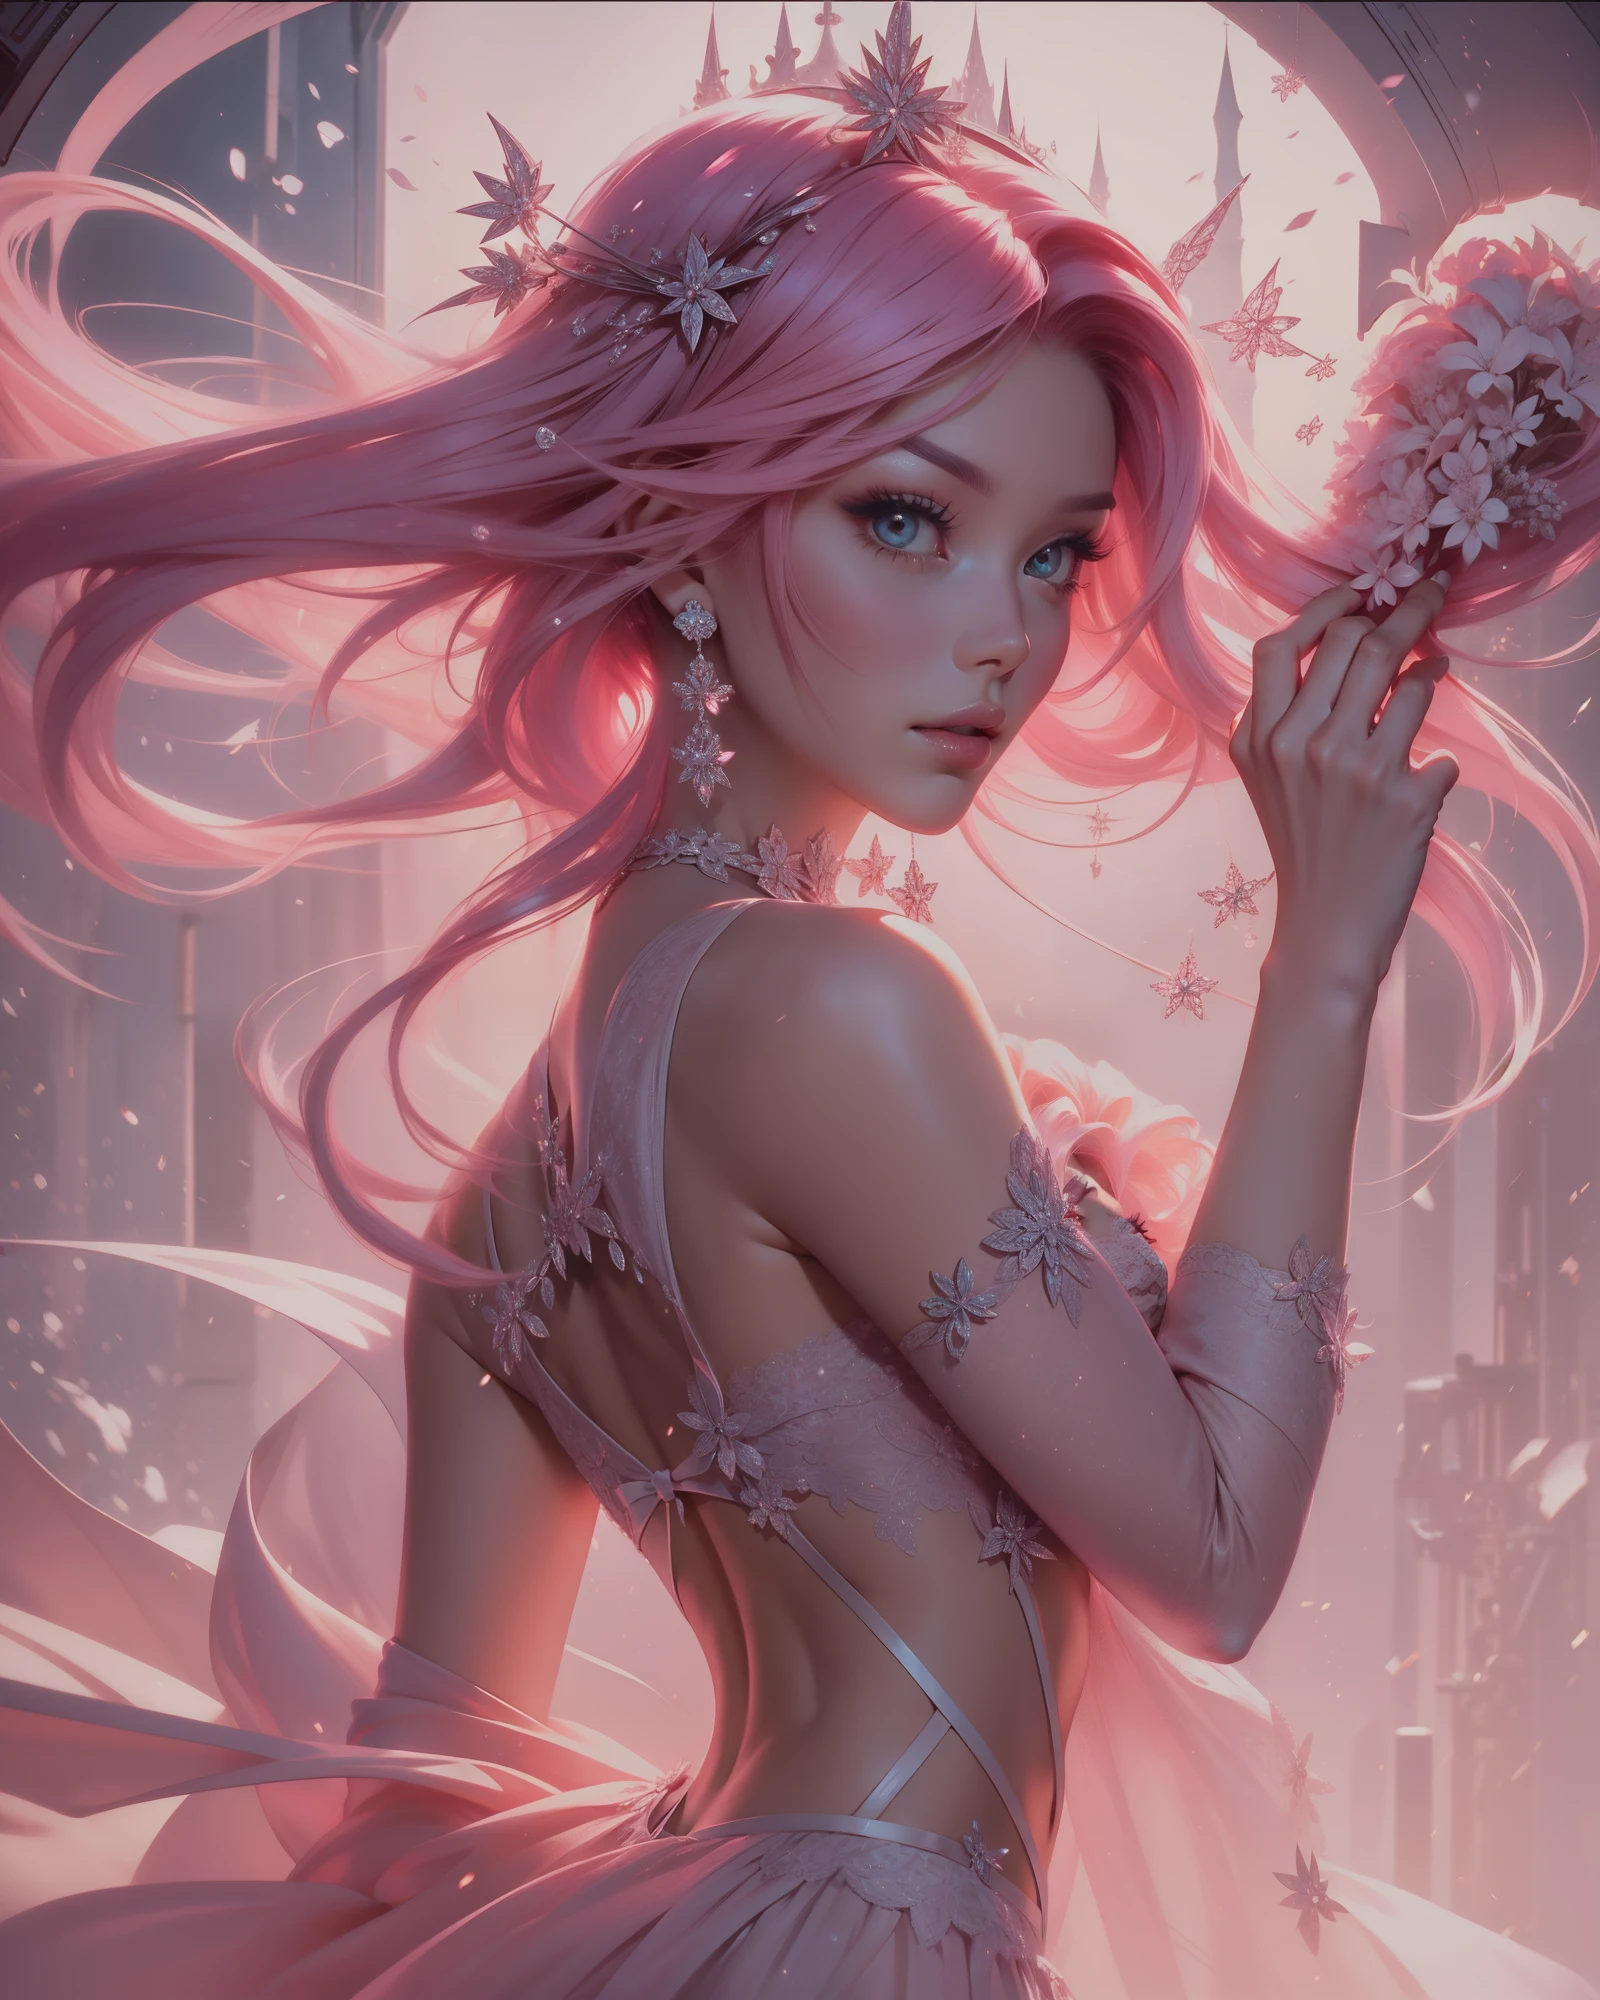 ((ピンクの髪)) ショートヘア, ピンクの髪,,一人で, 女神